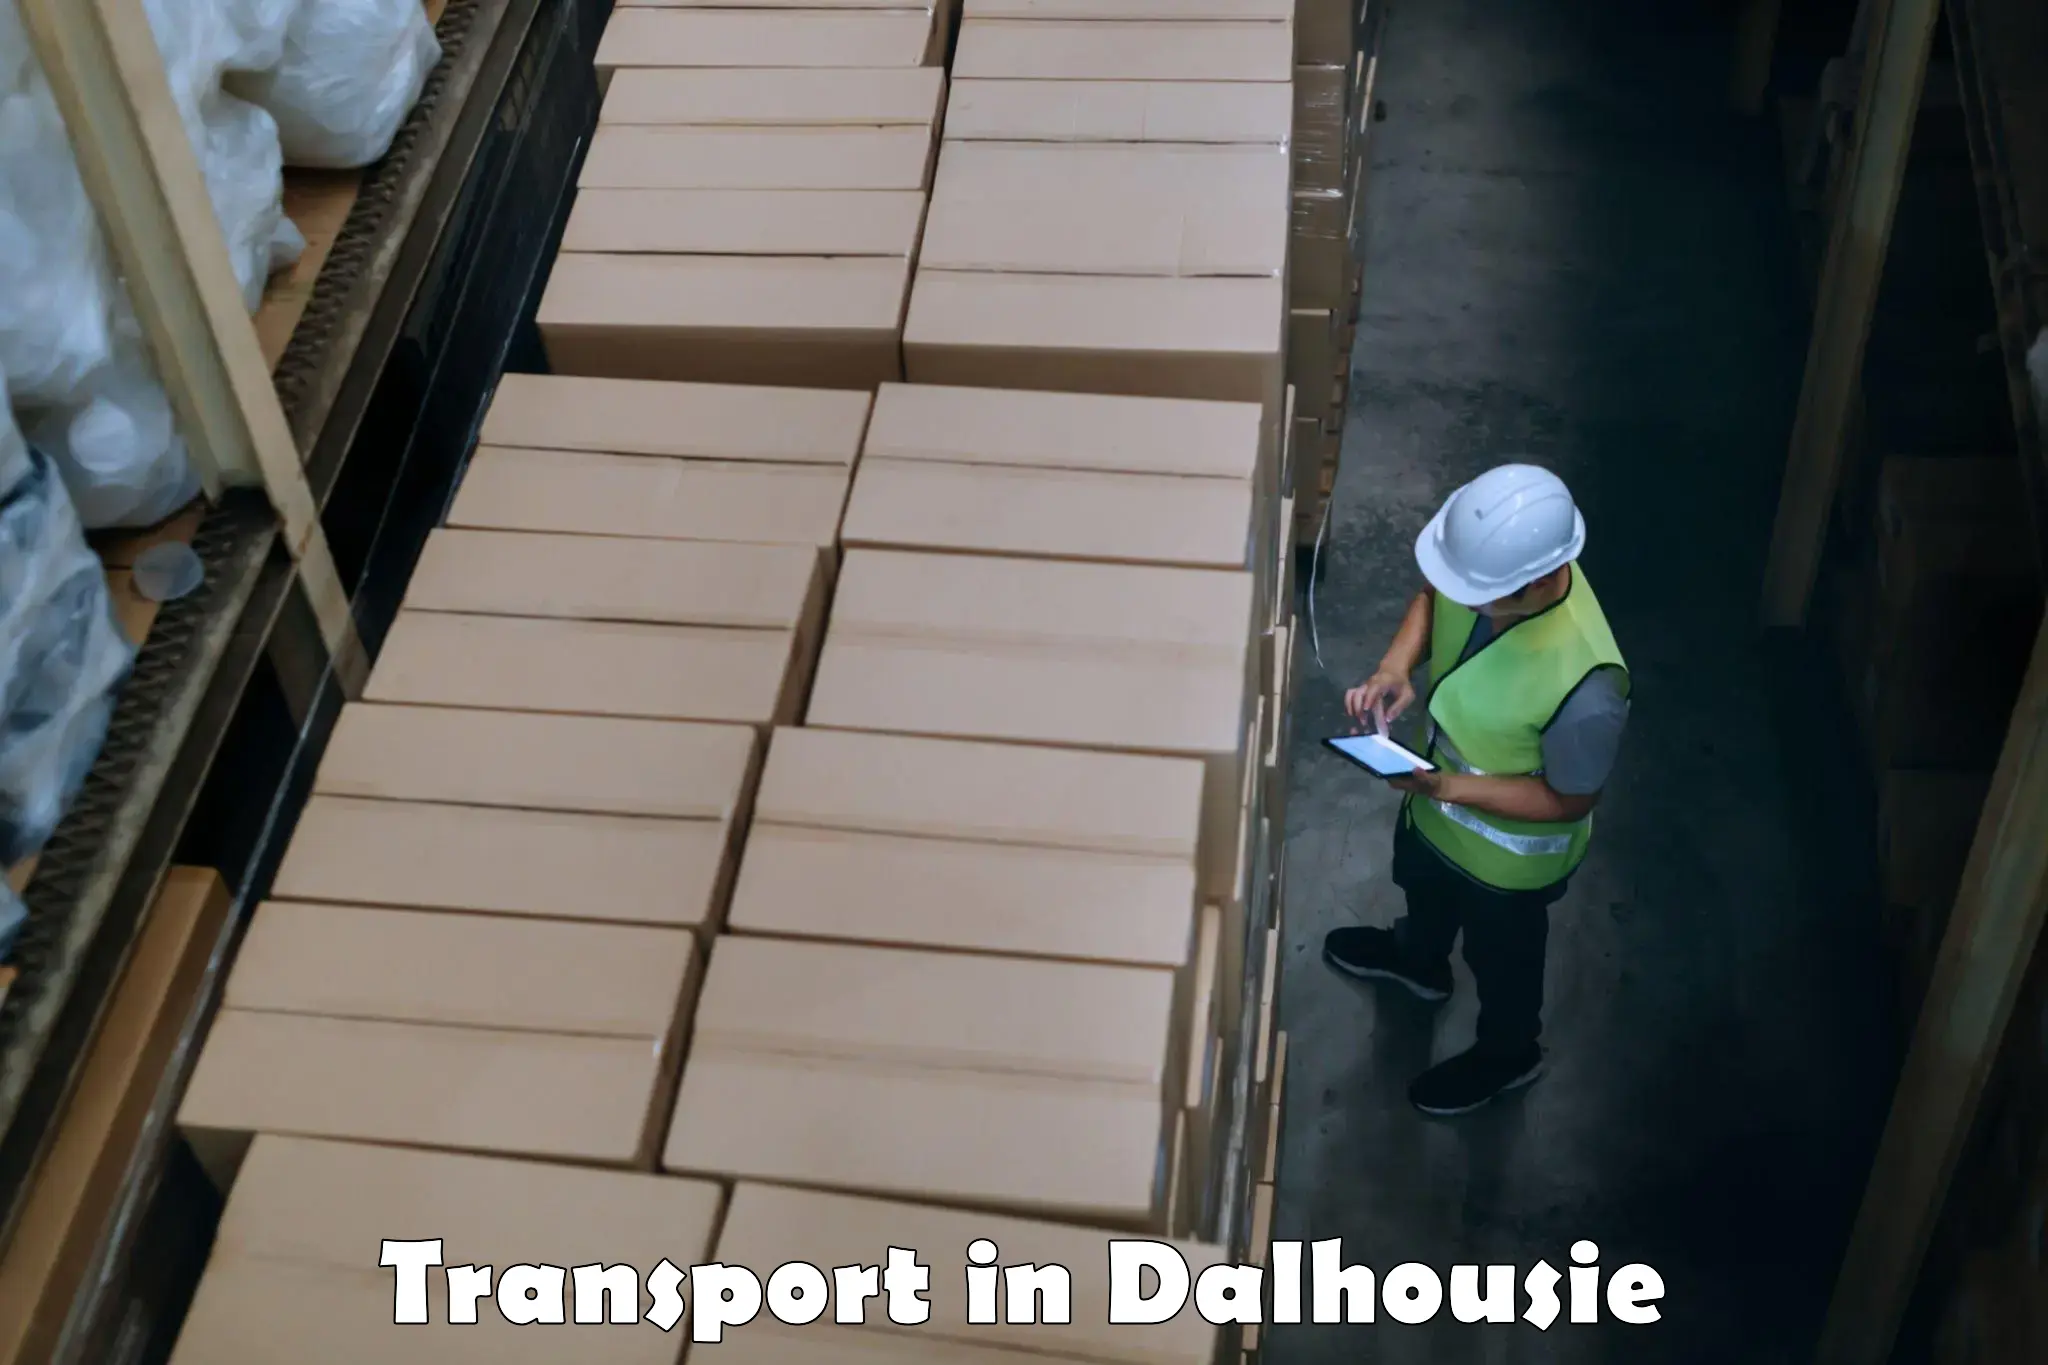 Furniture transport service in Dalhousie